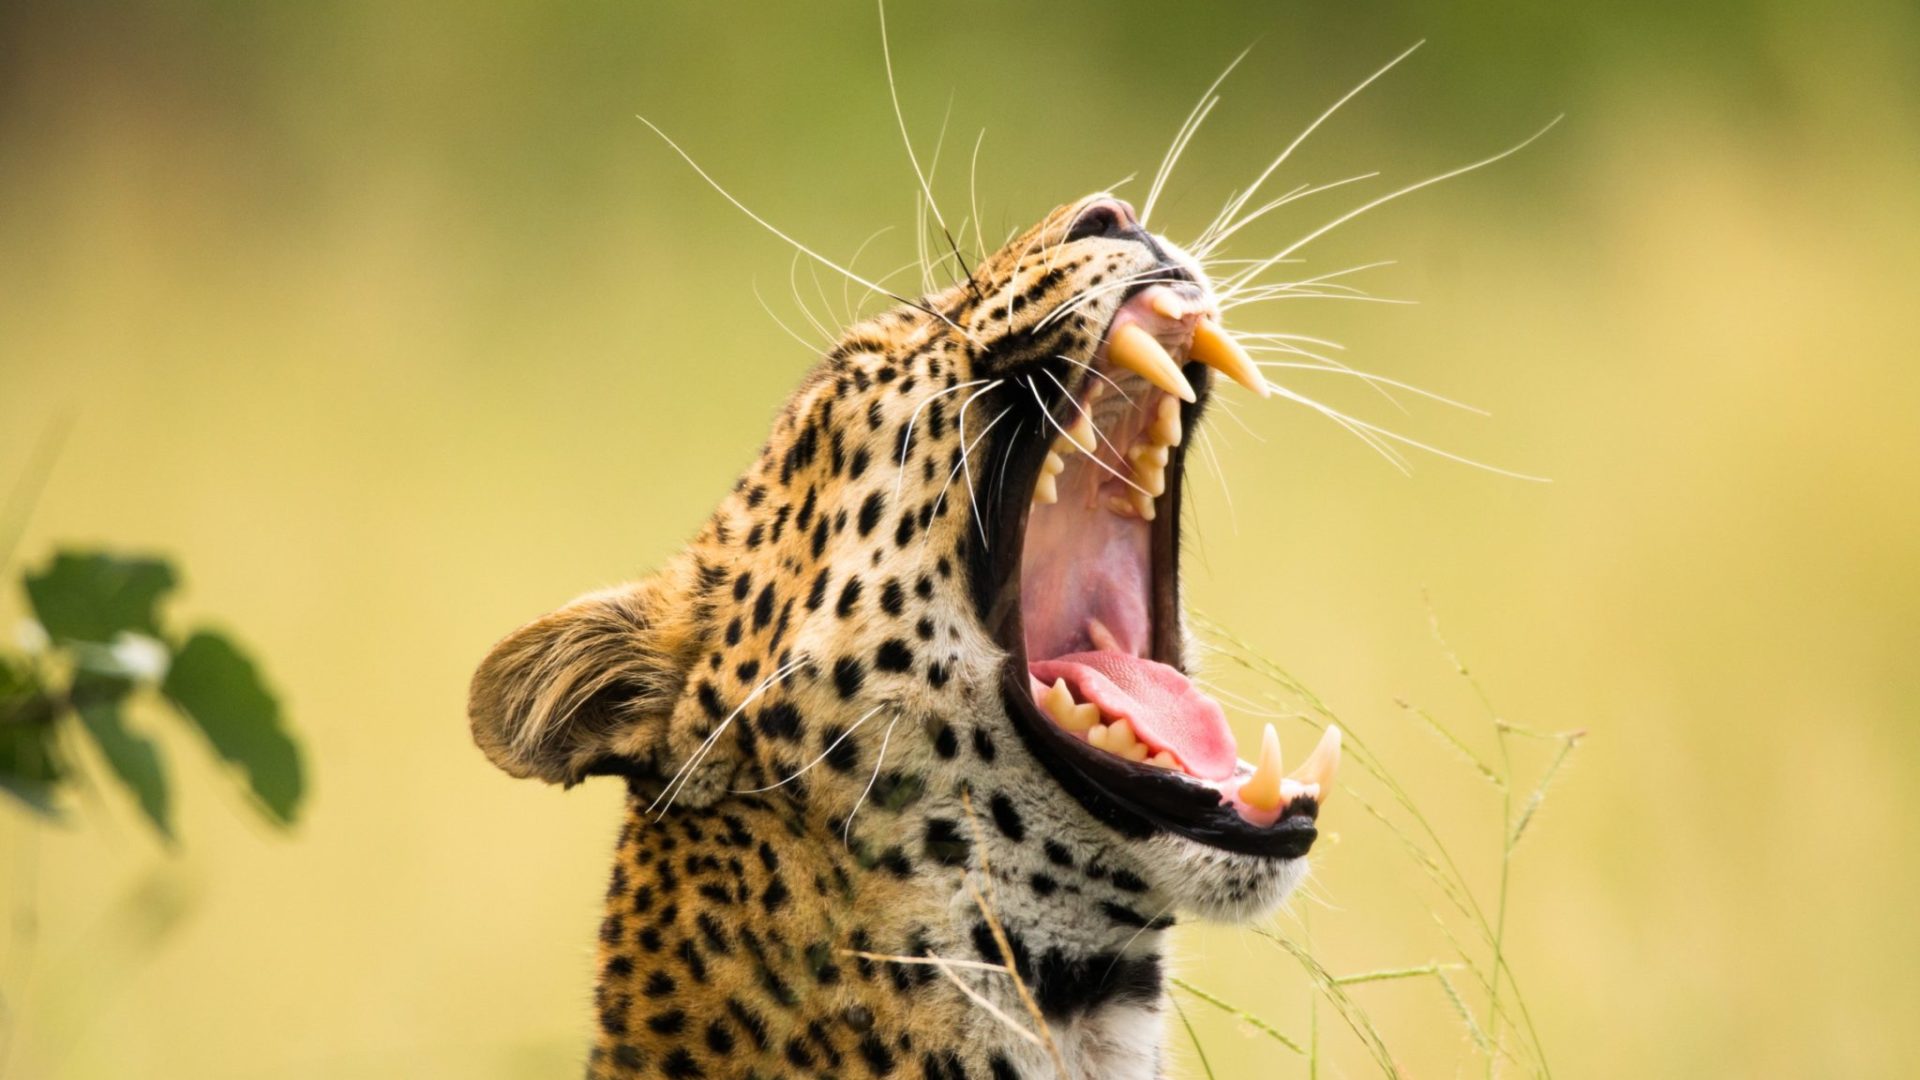 khwai leopard yawning